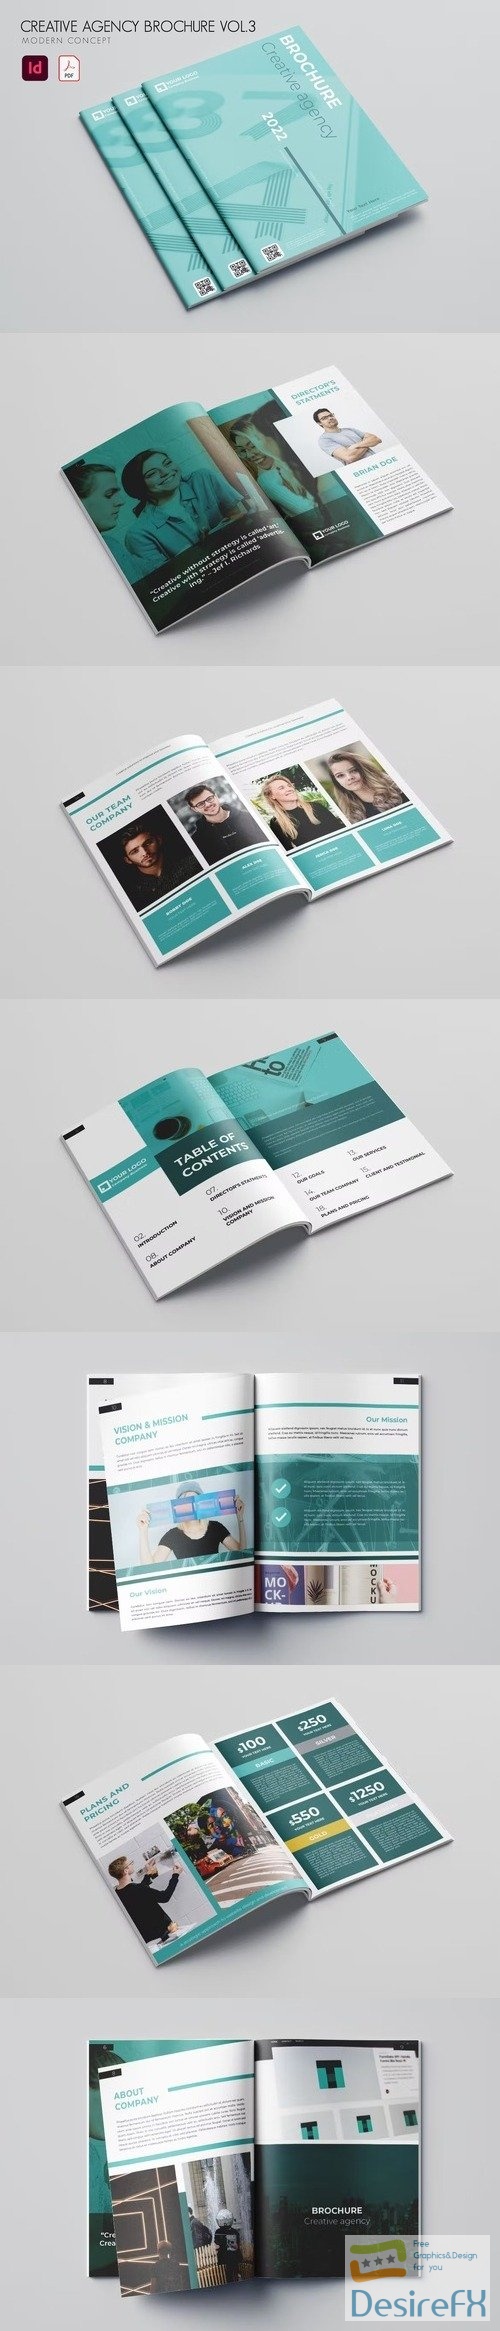 Creative Agency Brochure Vol.3